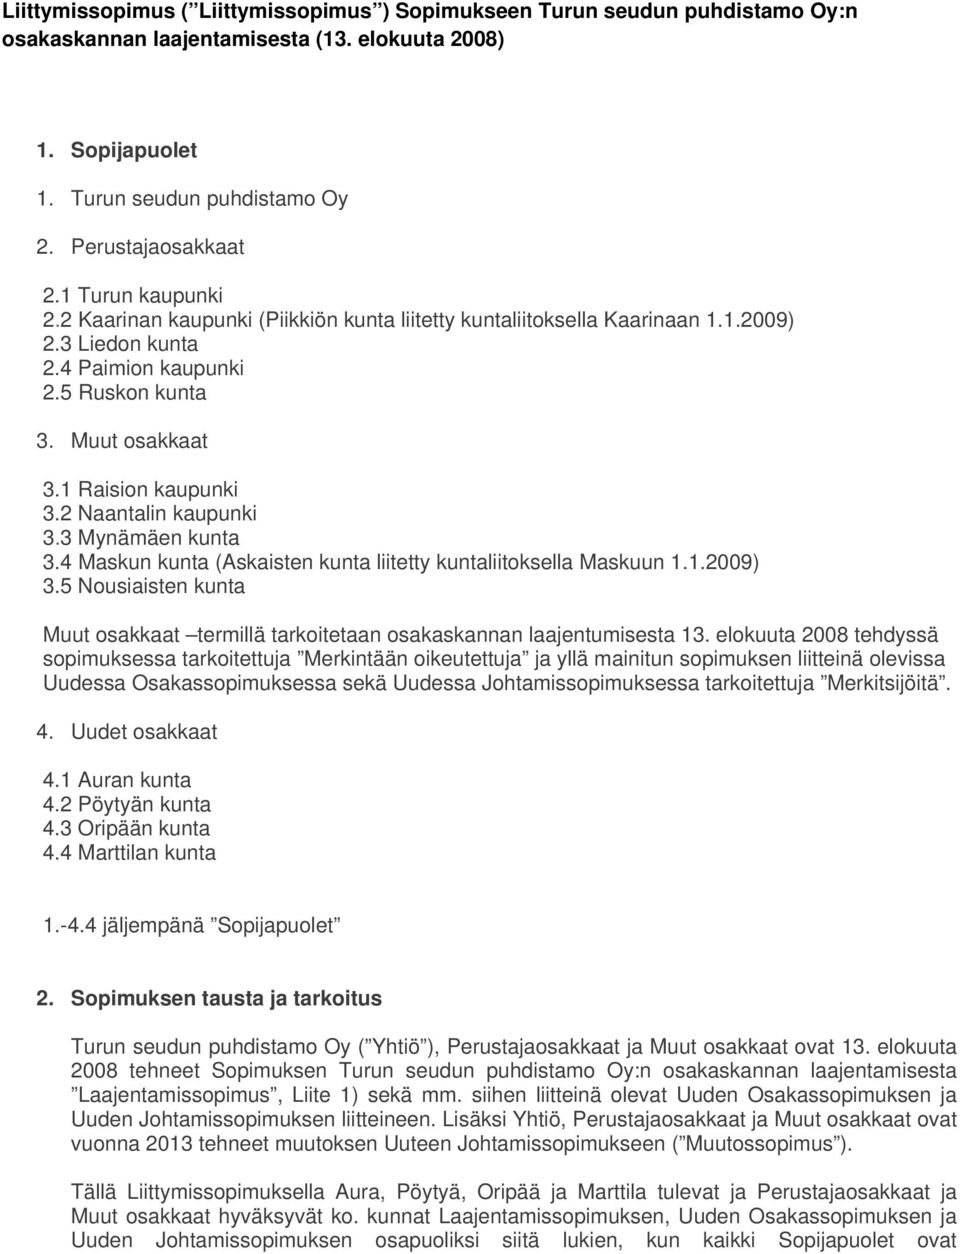 2 Naantalin kaupunki 3.3 Mynämäen kunta 3.4 Maskun kunta (Askaisten kunta liitetty kuntaliitoksella Maskuun 1.1.2009) 3.